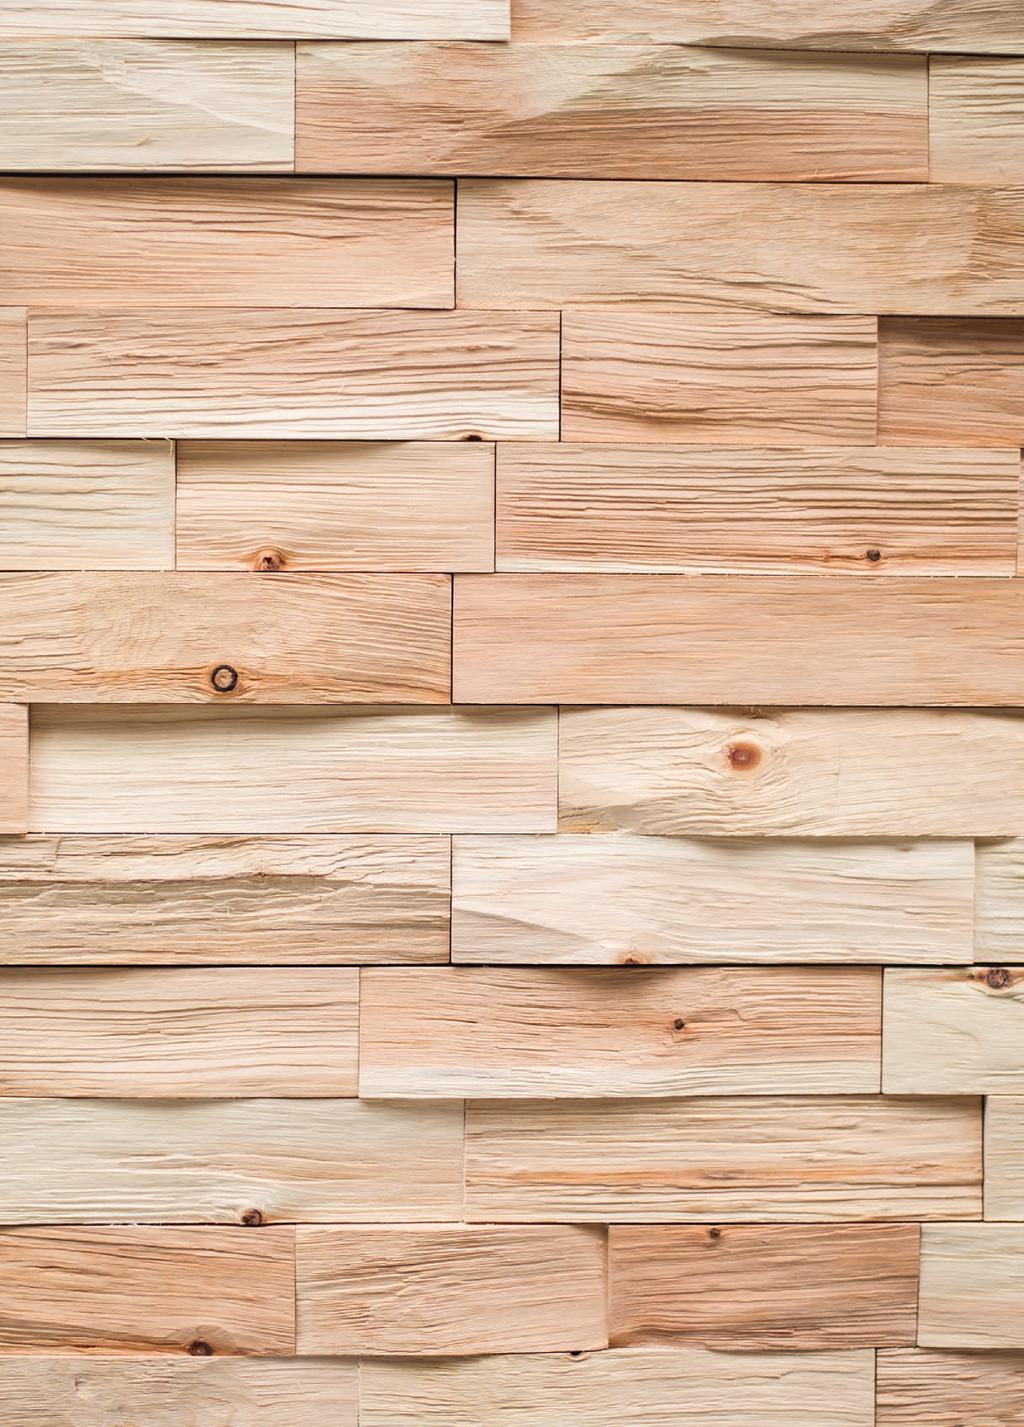 Spaltholz ist eine dreidimensionale Holzoberfläche, die durch Spaltung von massivem Holz oder durch Abstufung verschieden starker Leisten entsteht. Es ist weitestgehend handgefertigt und individuell.